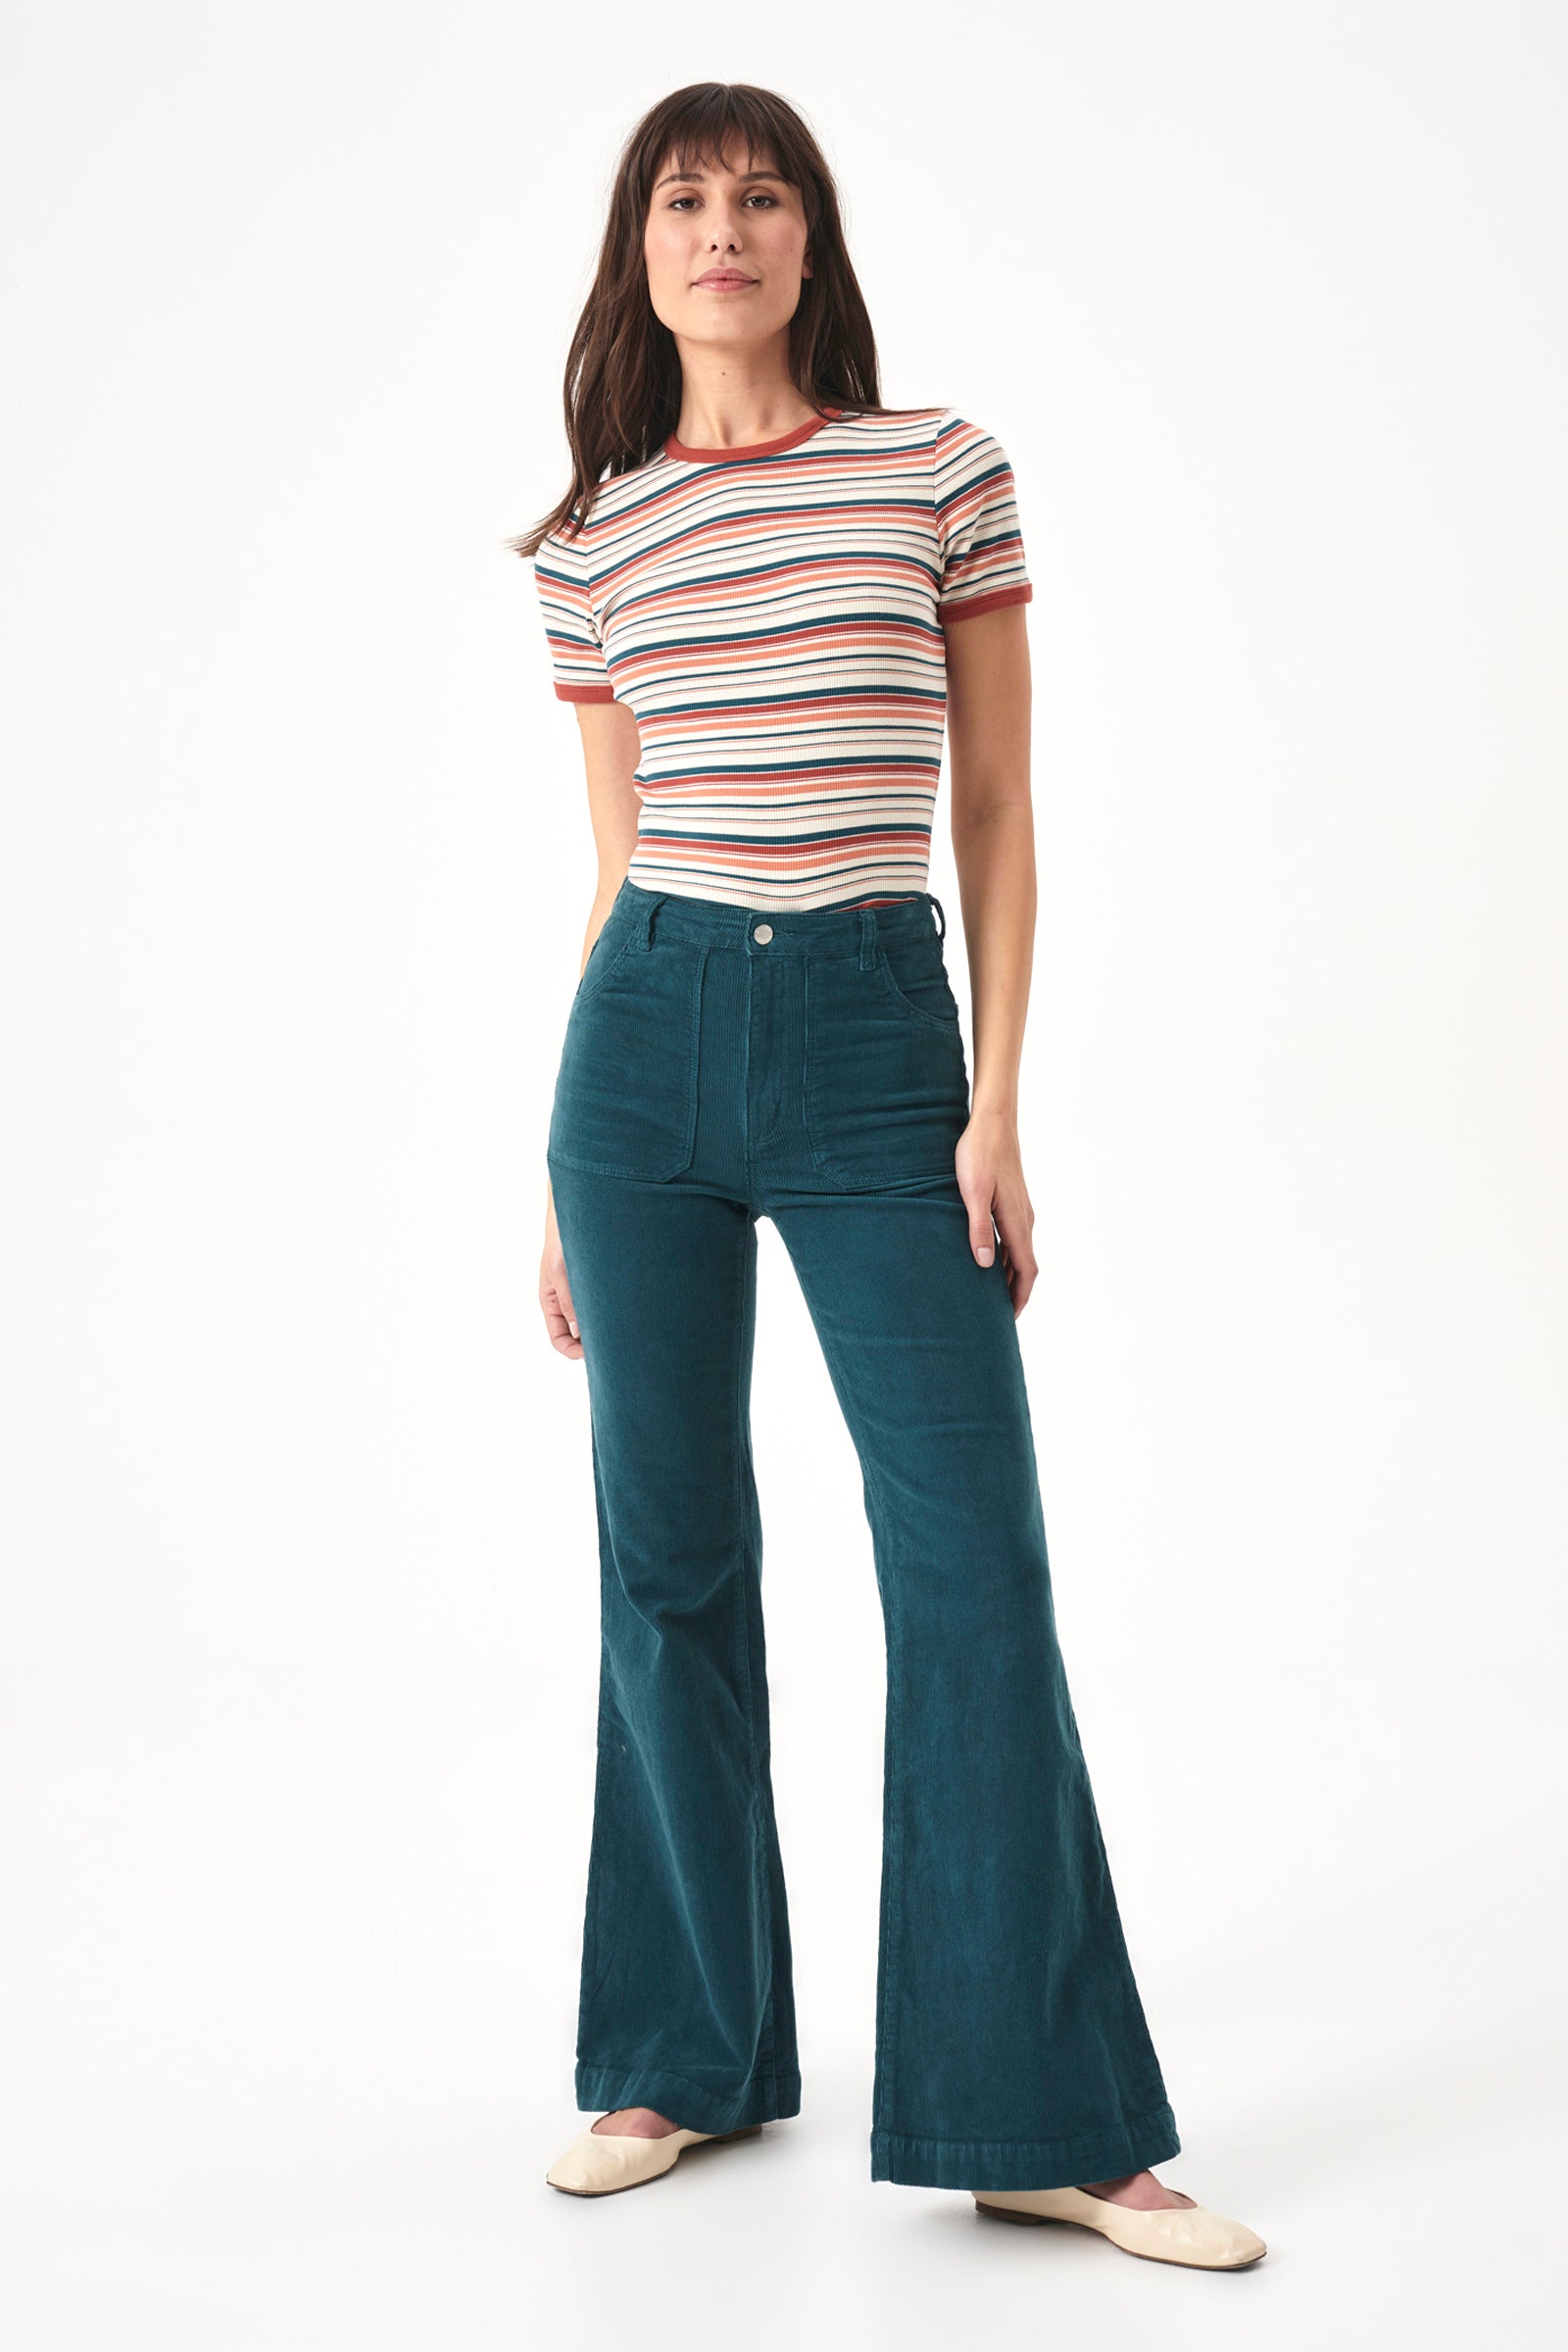 Buy Women's Eastcoast Flare Jeans Online